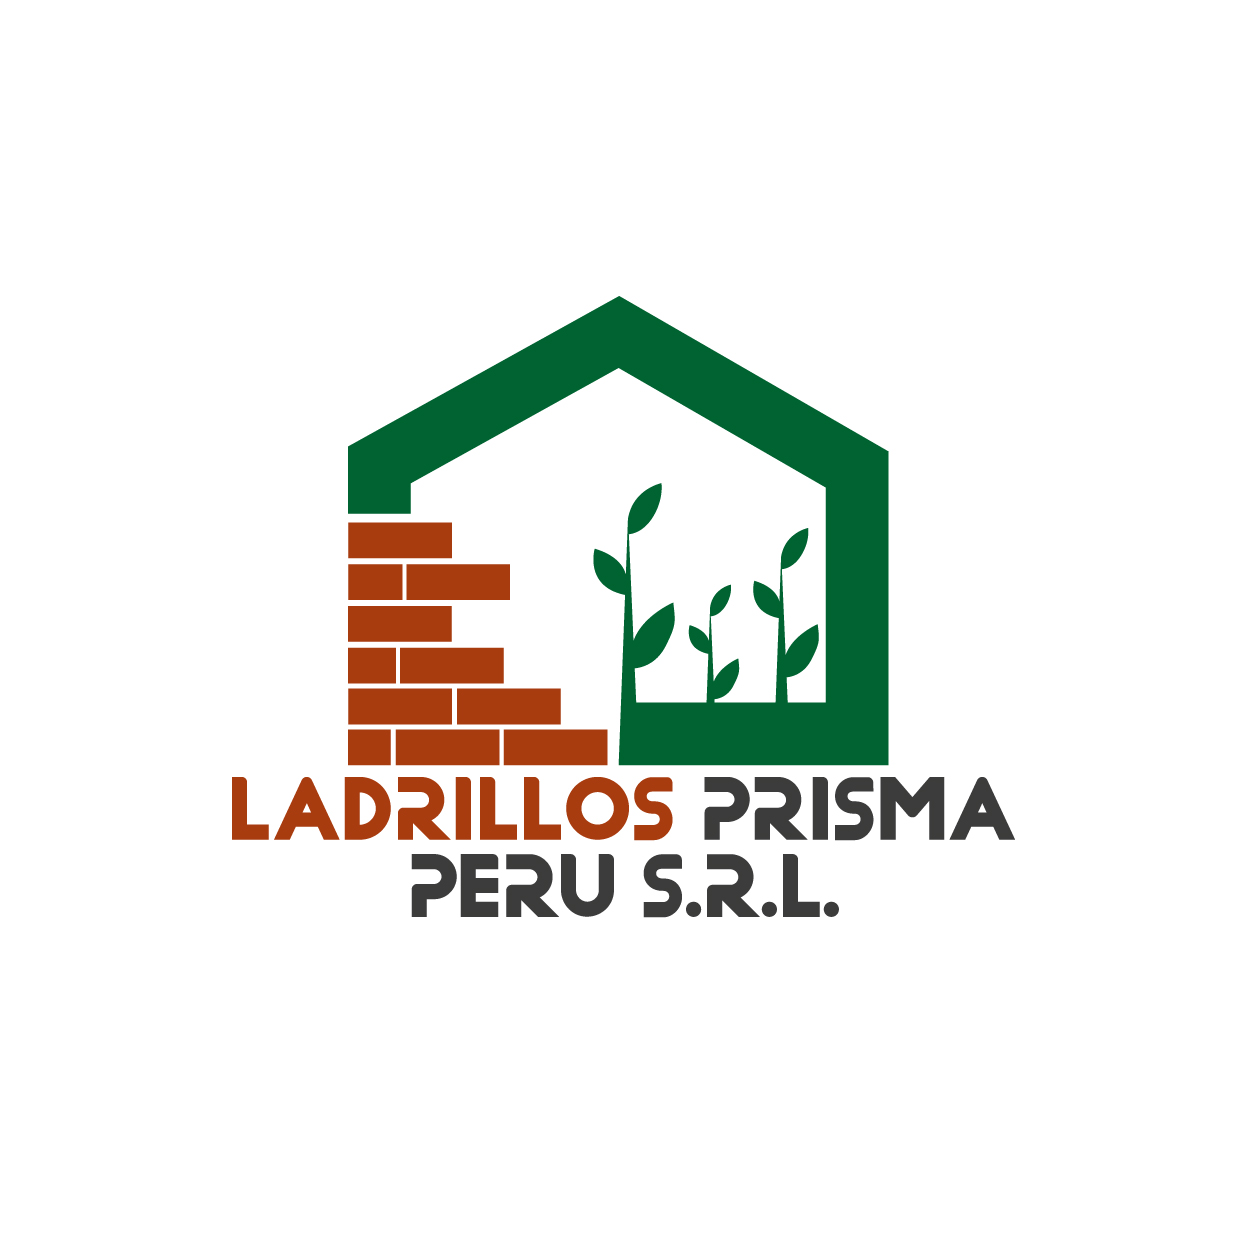 Ladrillos Prisma | Logos Perú